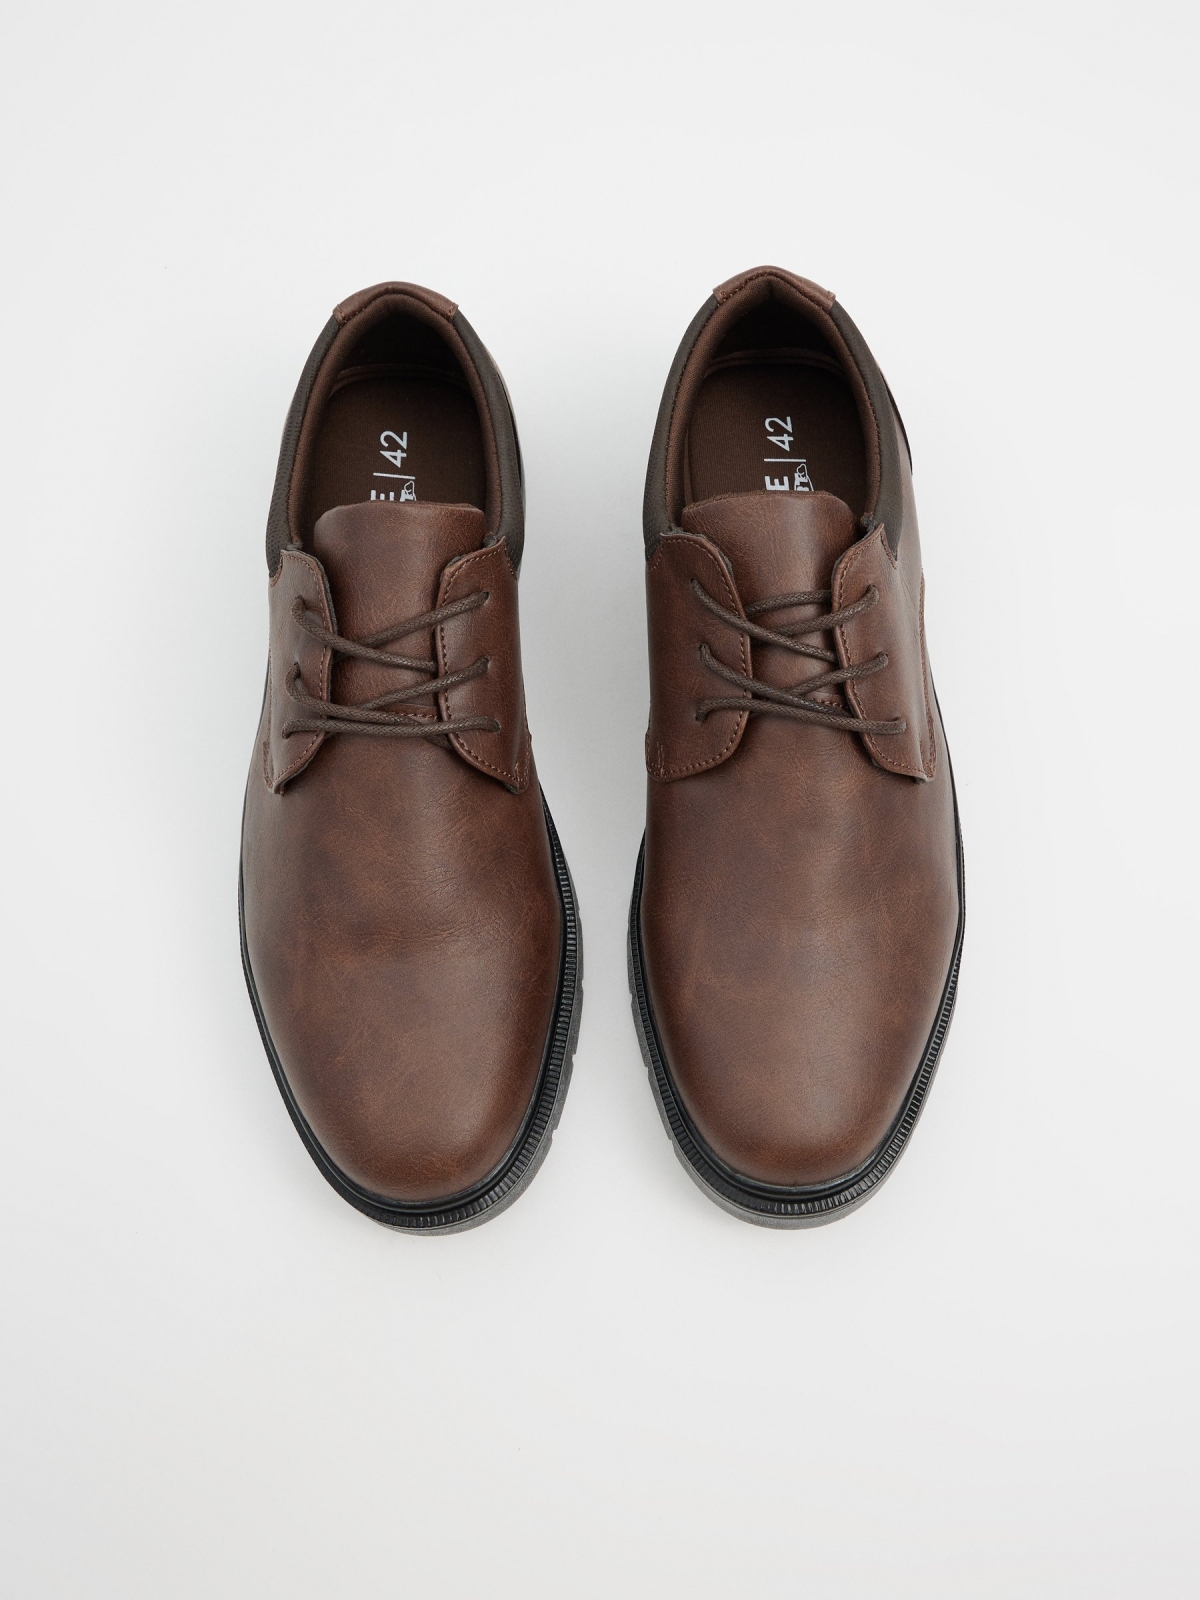 Zapato efecto piel marrón marrón tostado vista cenital